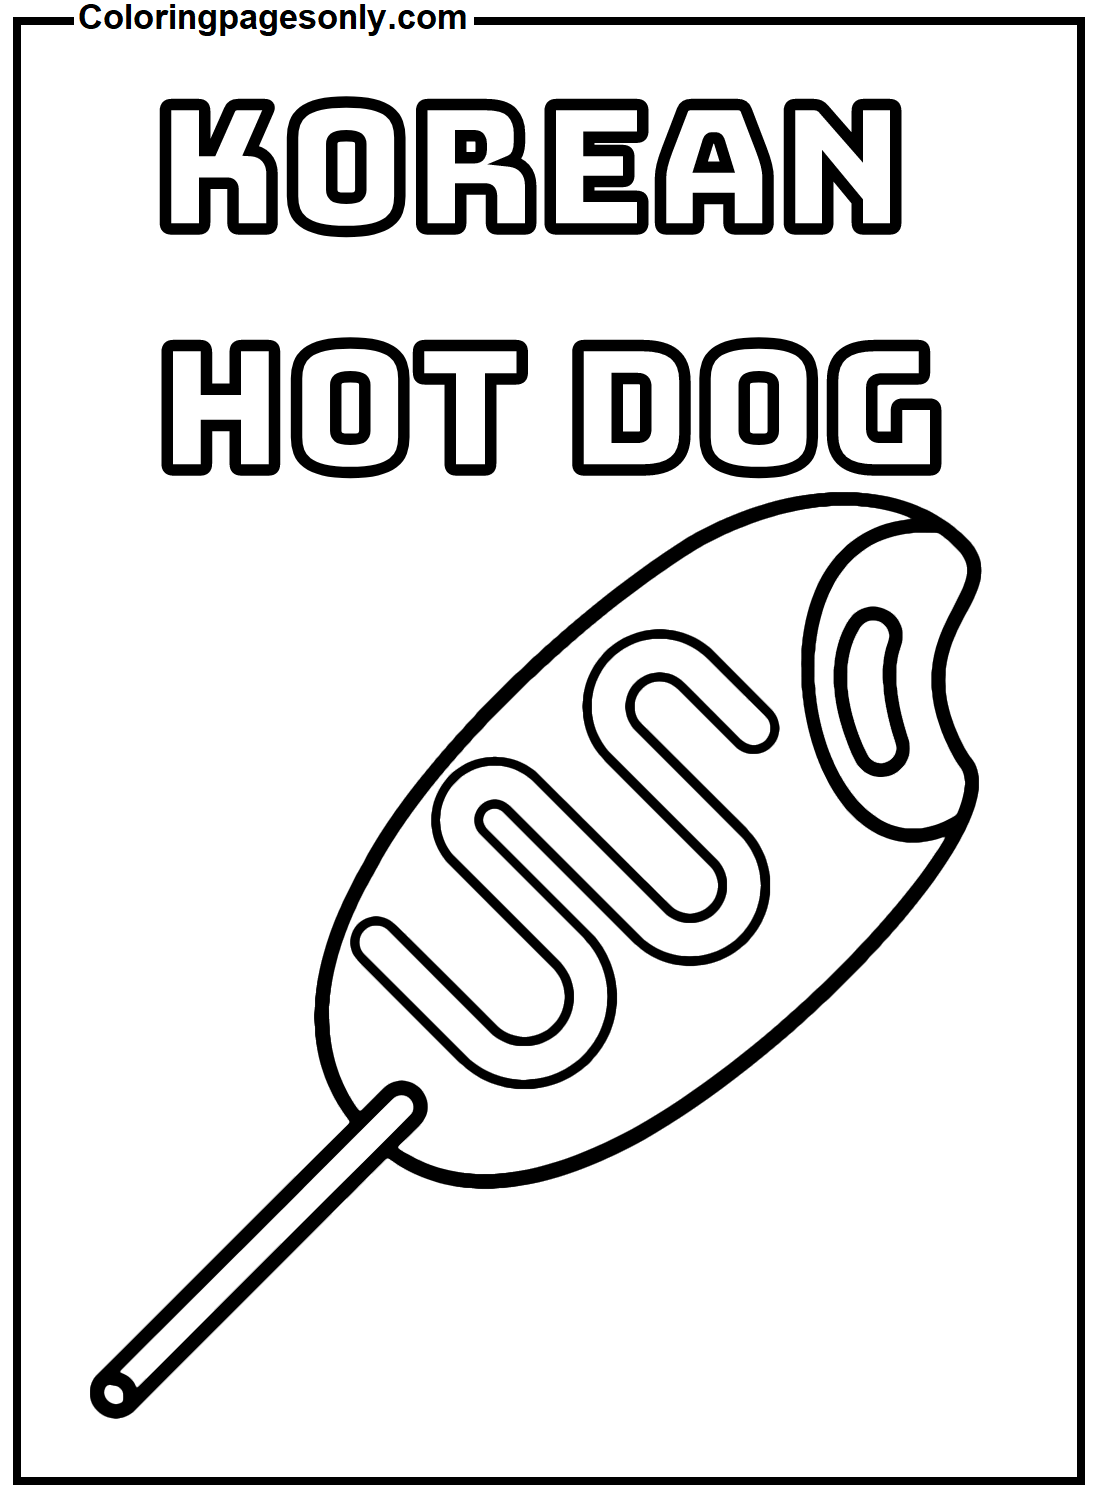 Koreaanse Hotdog van Hot Dog